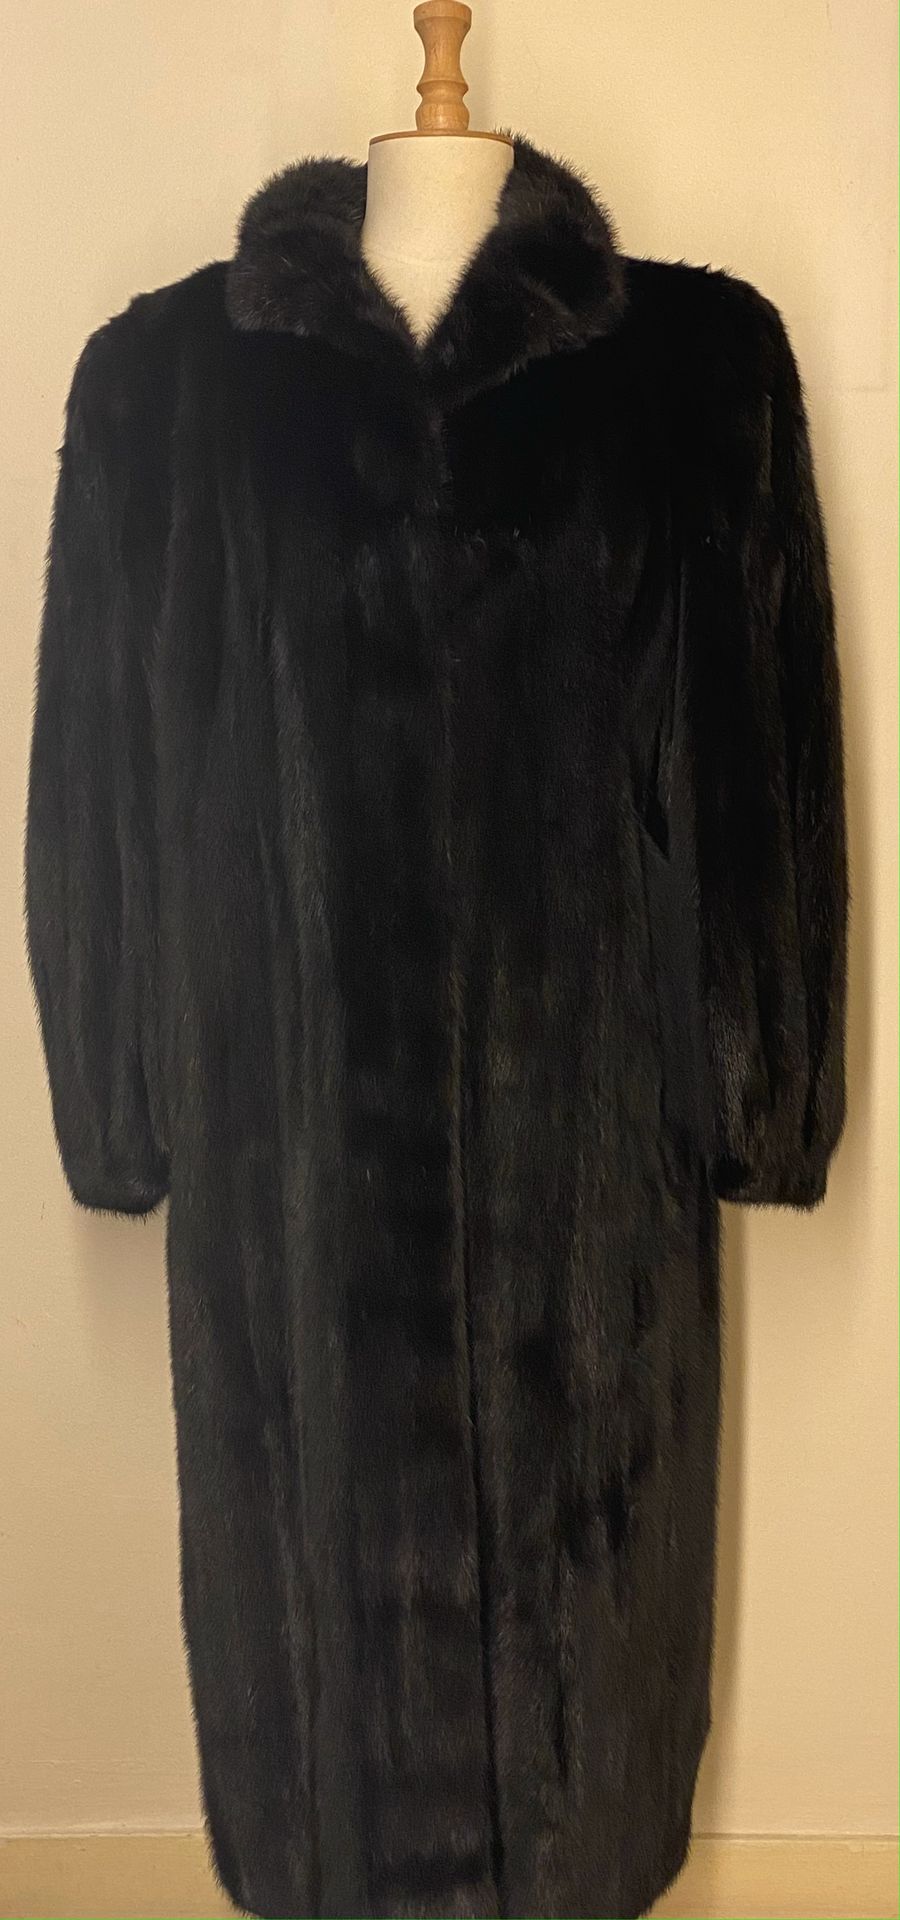 Null GIL Pelze in NANCY

Langer Mantel aus dunklem Nerz - Größe 38/40 



Die Ab&hellip;